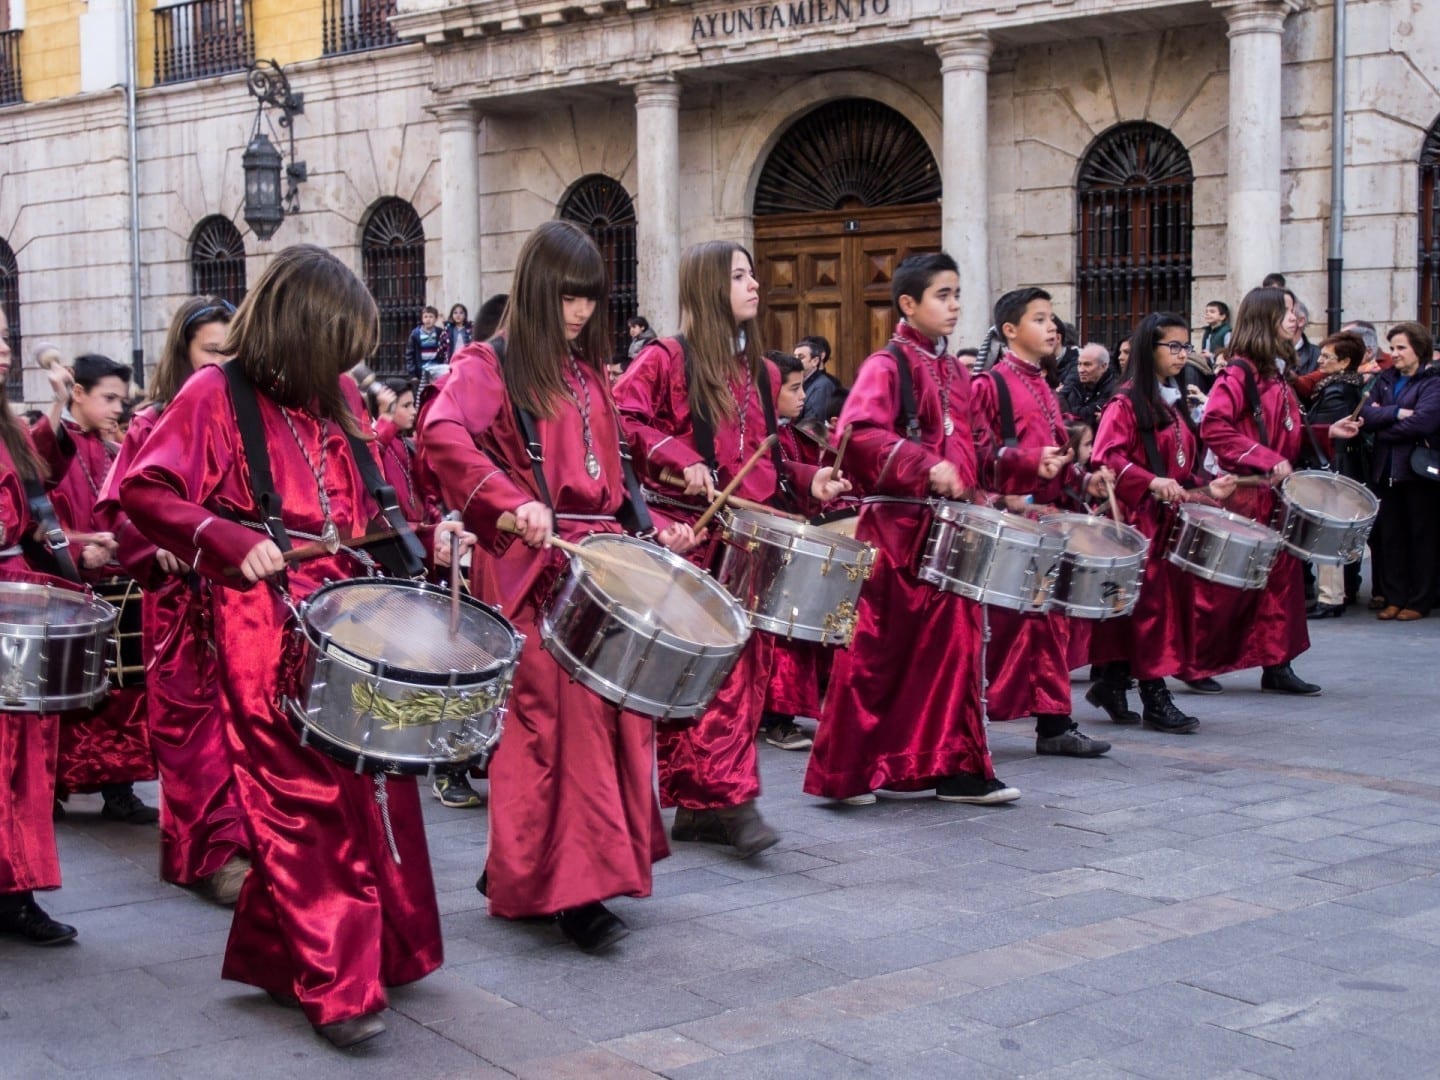 Tambores en una procesión de Semana Santa. Teruel España